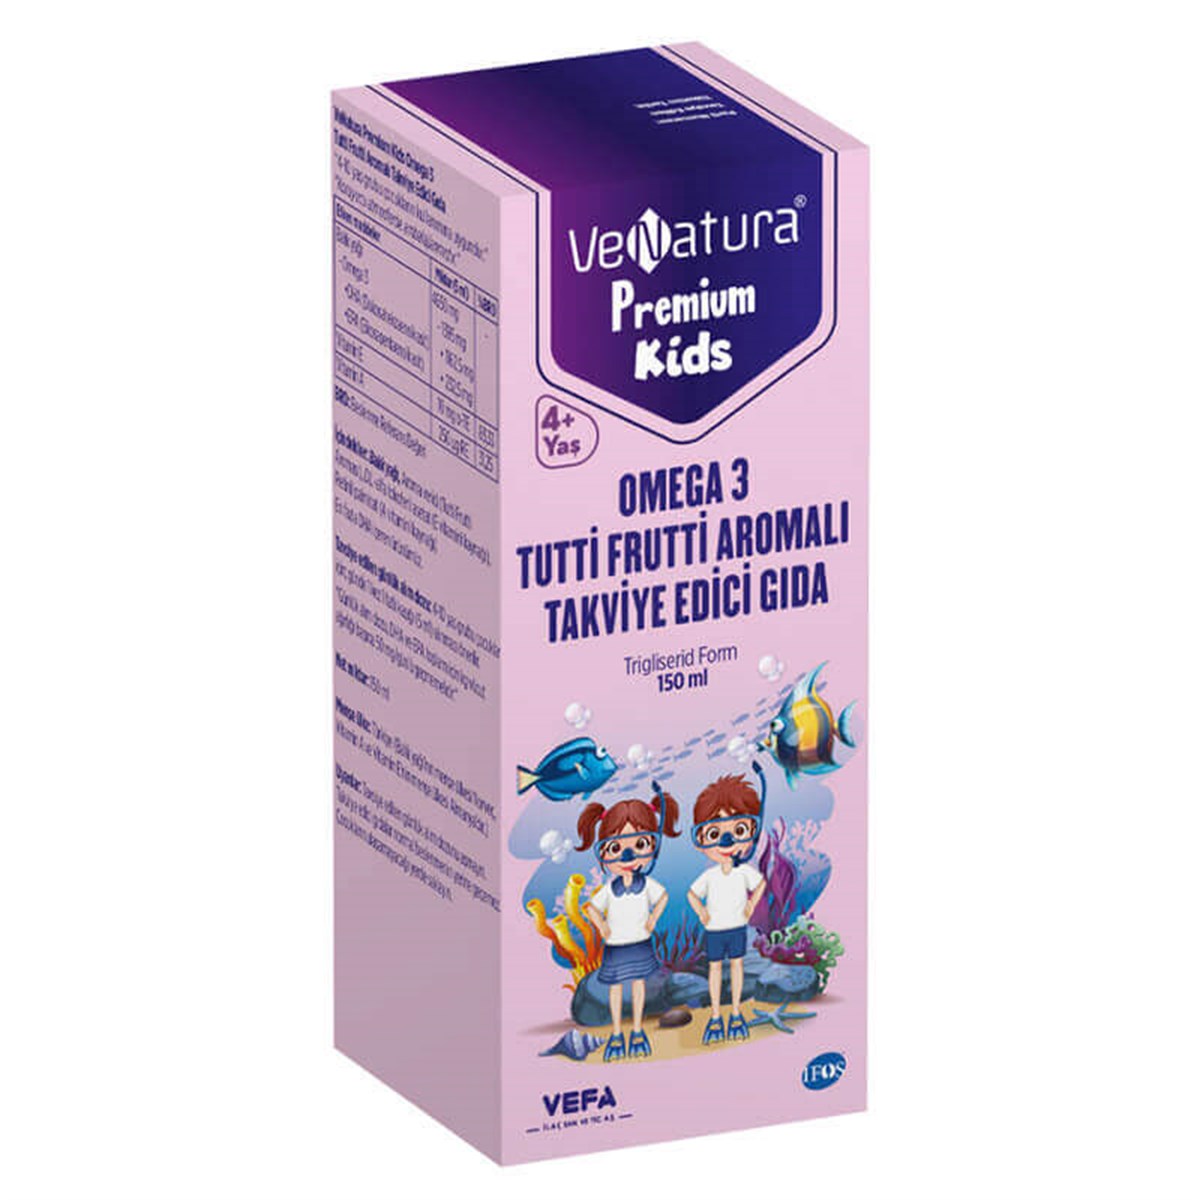 Venatura Premium Kids Omega 3 Tutti Frutti Aromalı 150 ml Fiyatları |  Dermosiparis.com